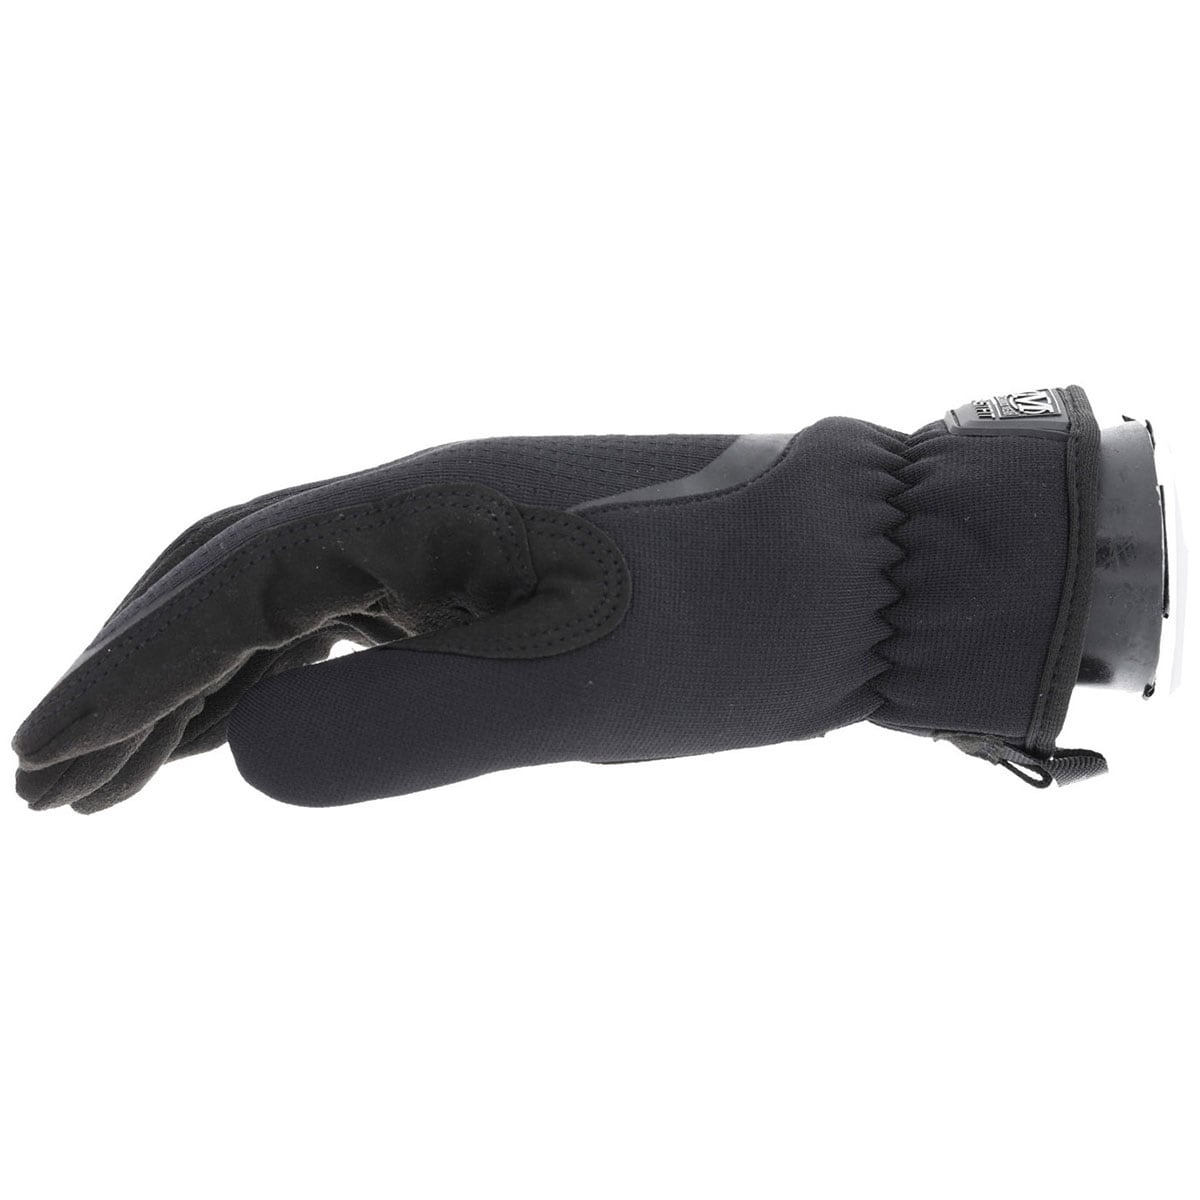 Жіночі тактичні рукавички Mechanix Wear Fast Fit Covert жіночі чорні